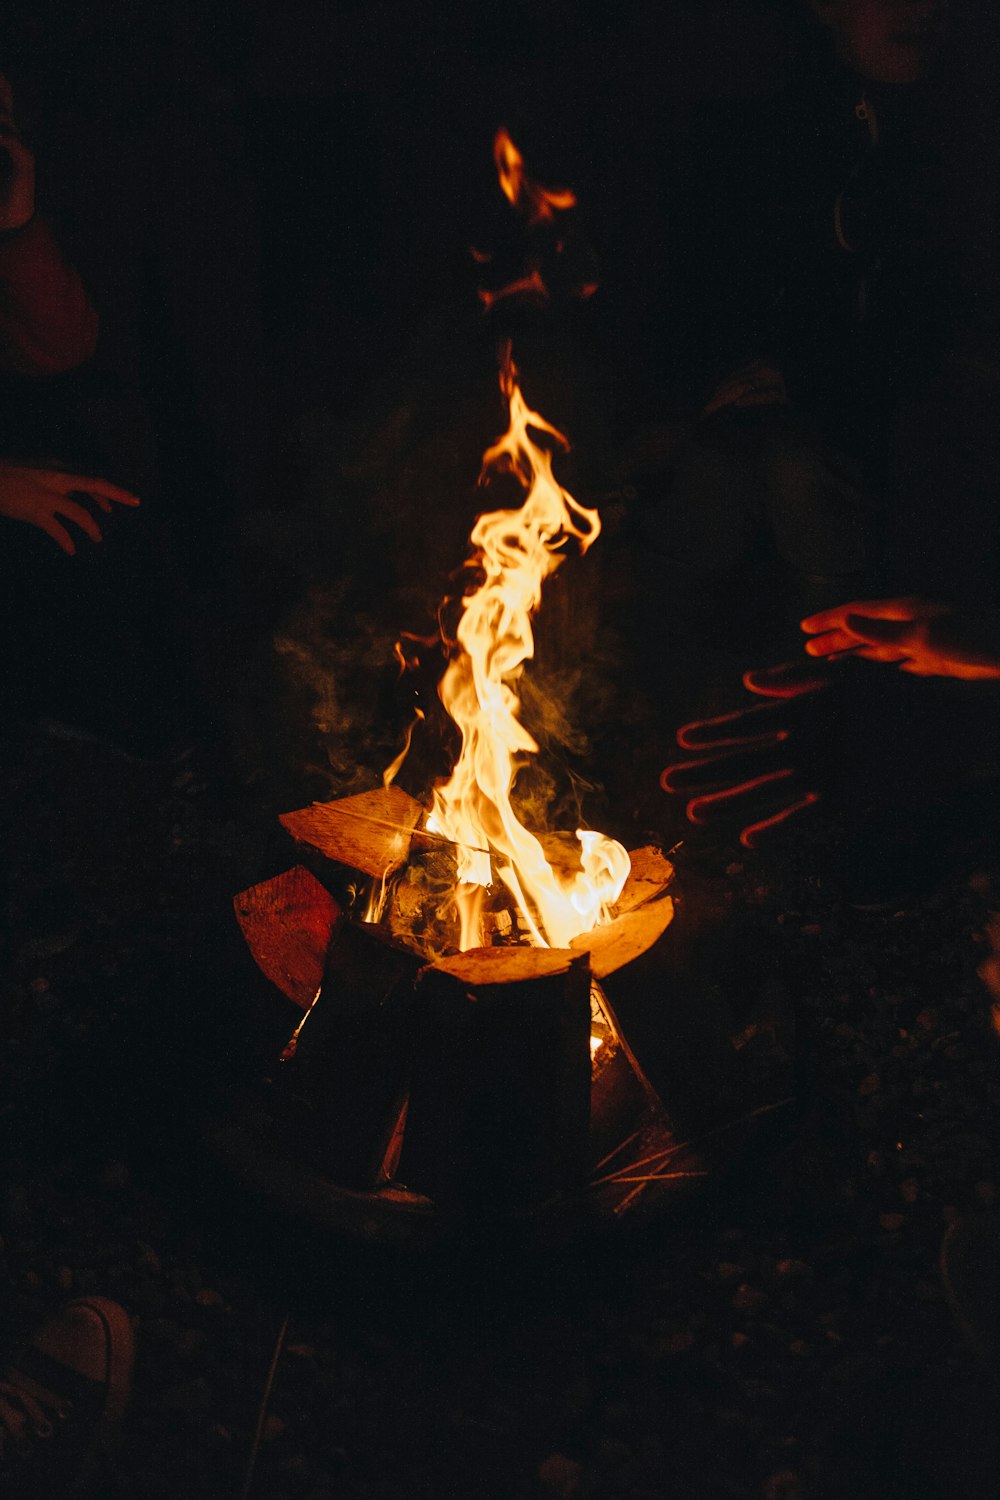 two people near bonfire